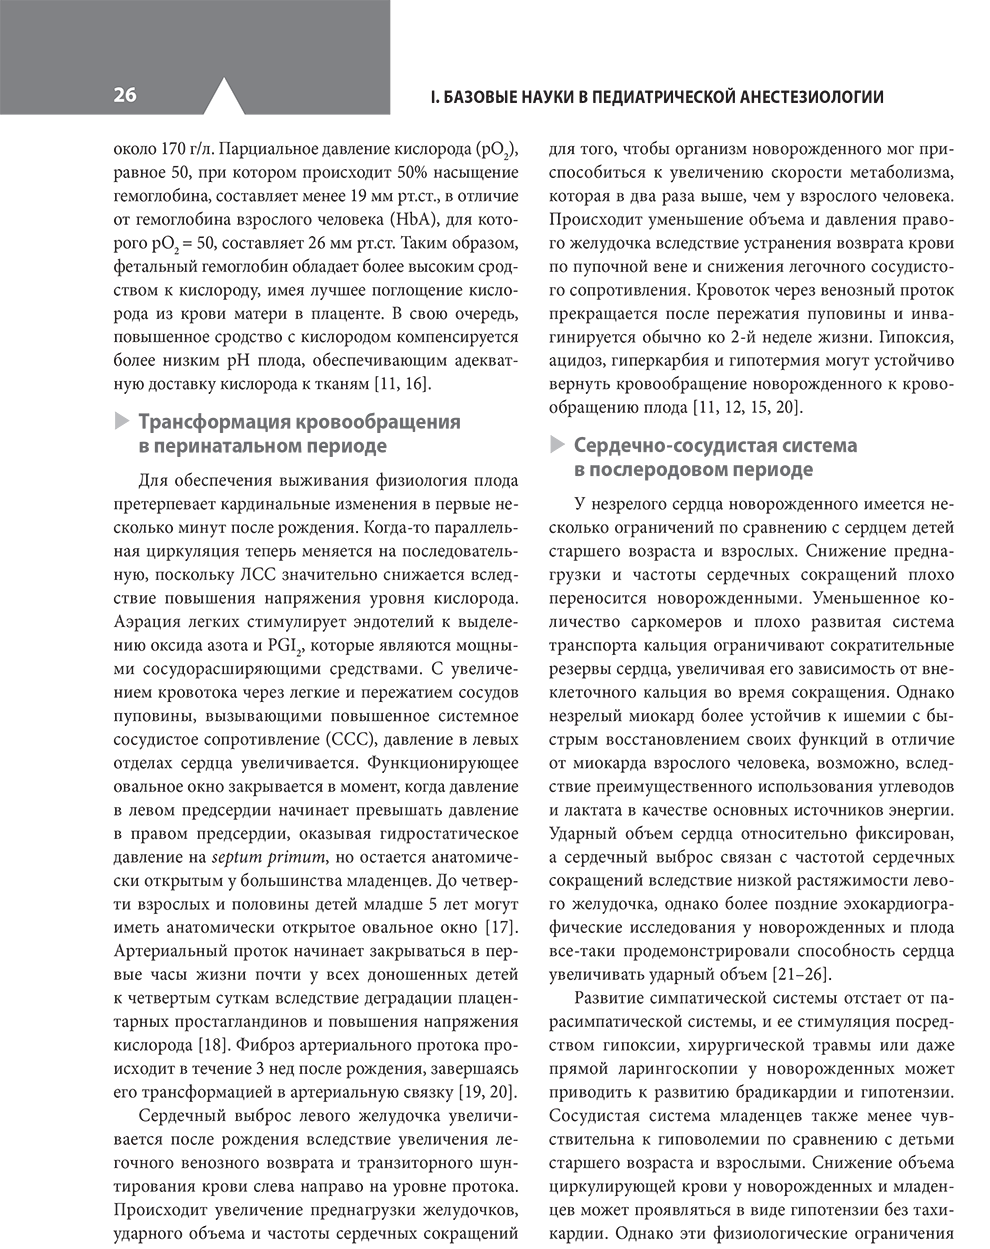 Пример страницы из книги "Клиническая анестезиология в педиатрической практике. Руководство" - Эллинас Г., Маттес К., Альраяши В., Бильге А.